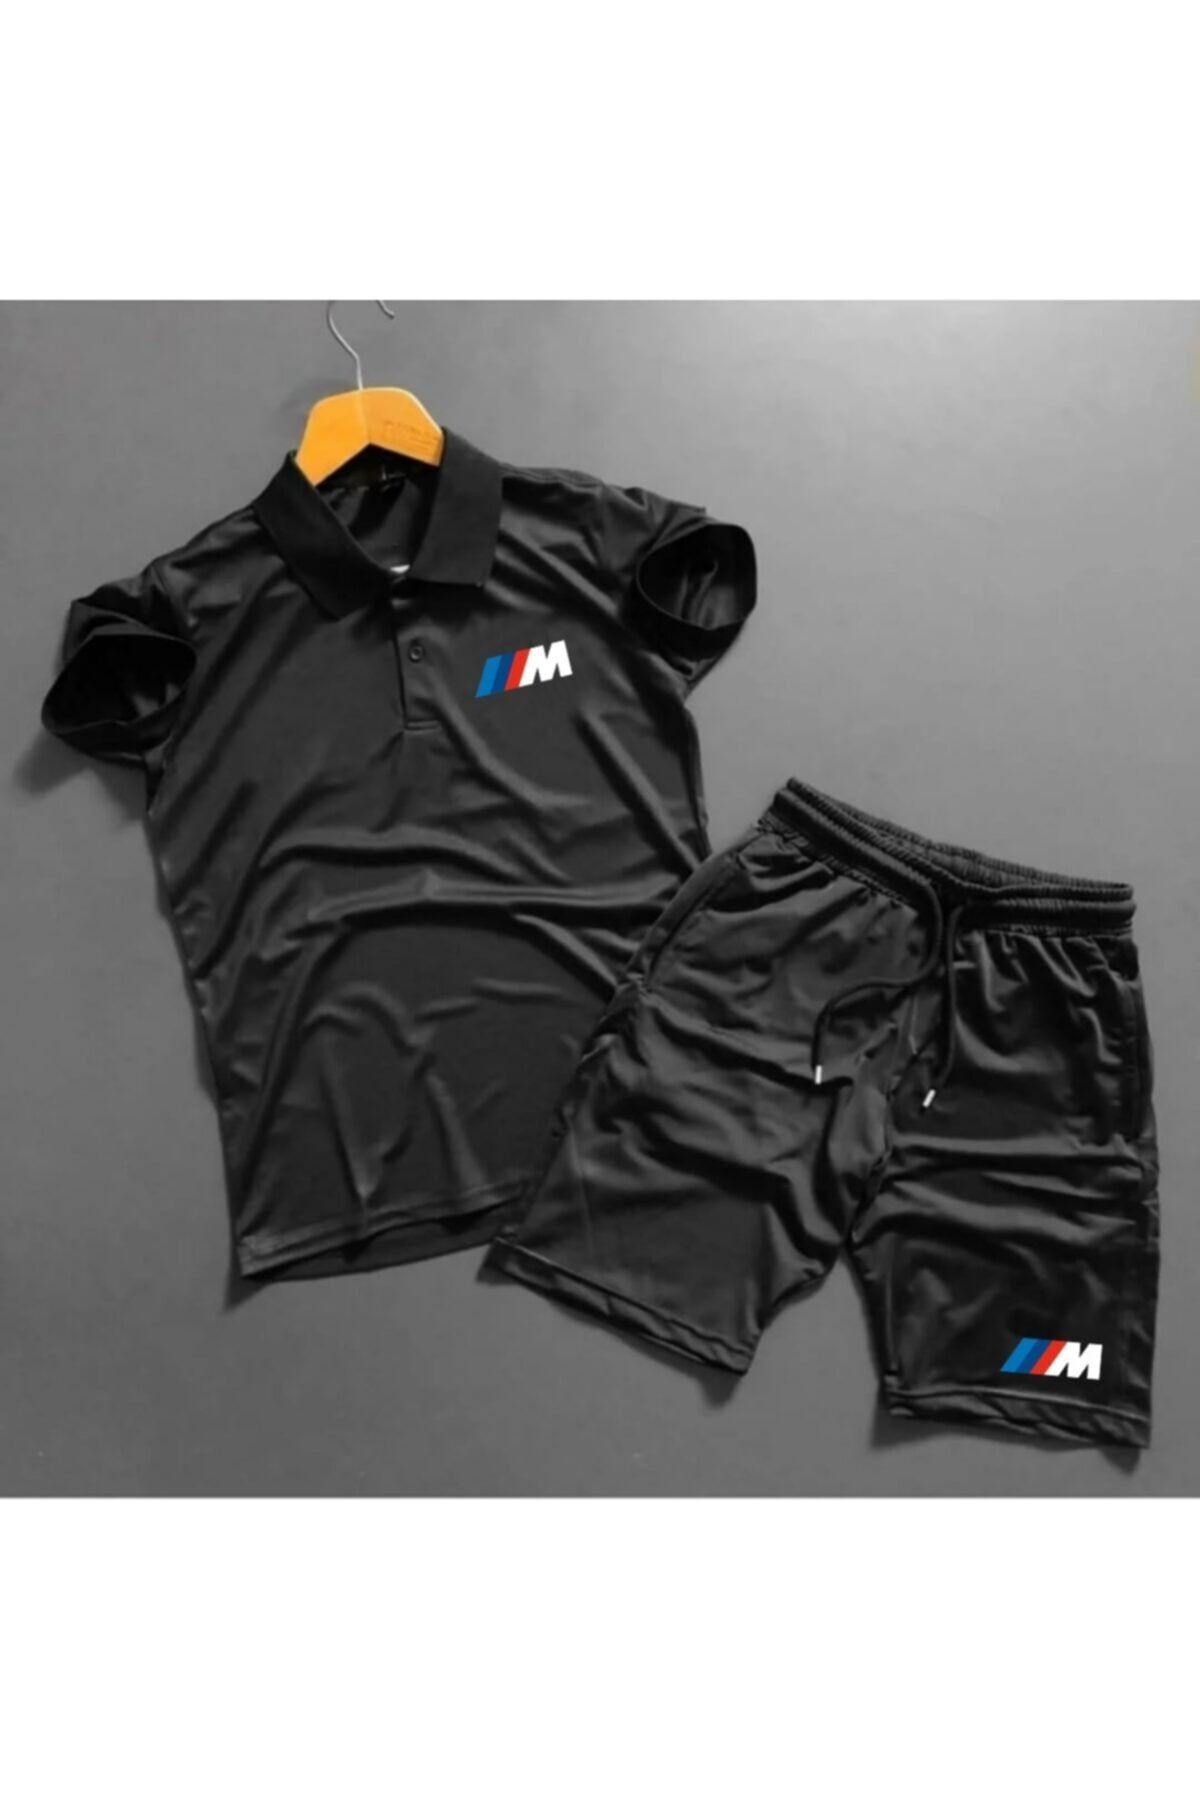 ByFourMan Unisex M Sport Baskılı Kısa Kollu T-shirt Şortlu Eşofman Takımı